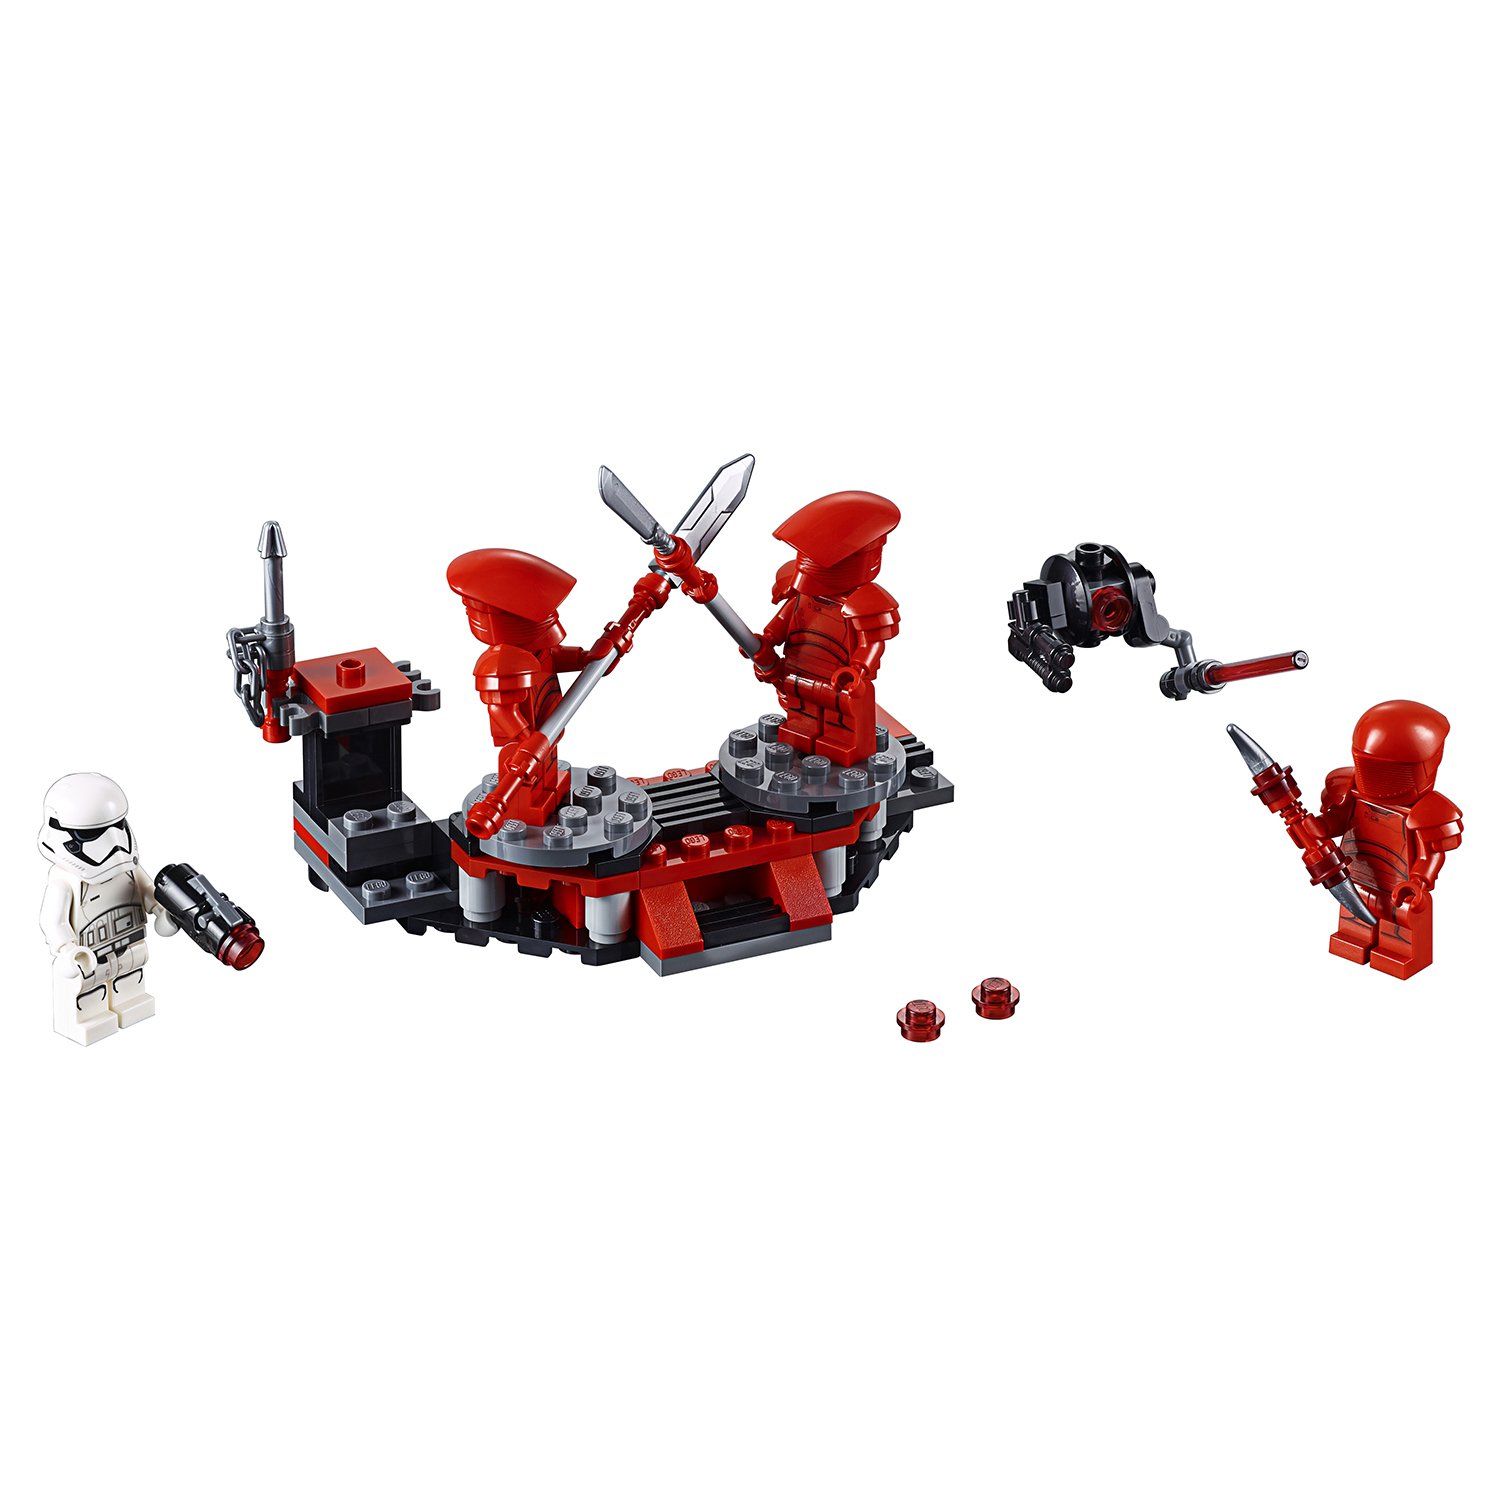 Конструктор LEGO Star Wars Боевой набор Элитной преторианской гвардии 75225